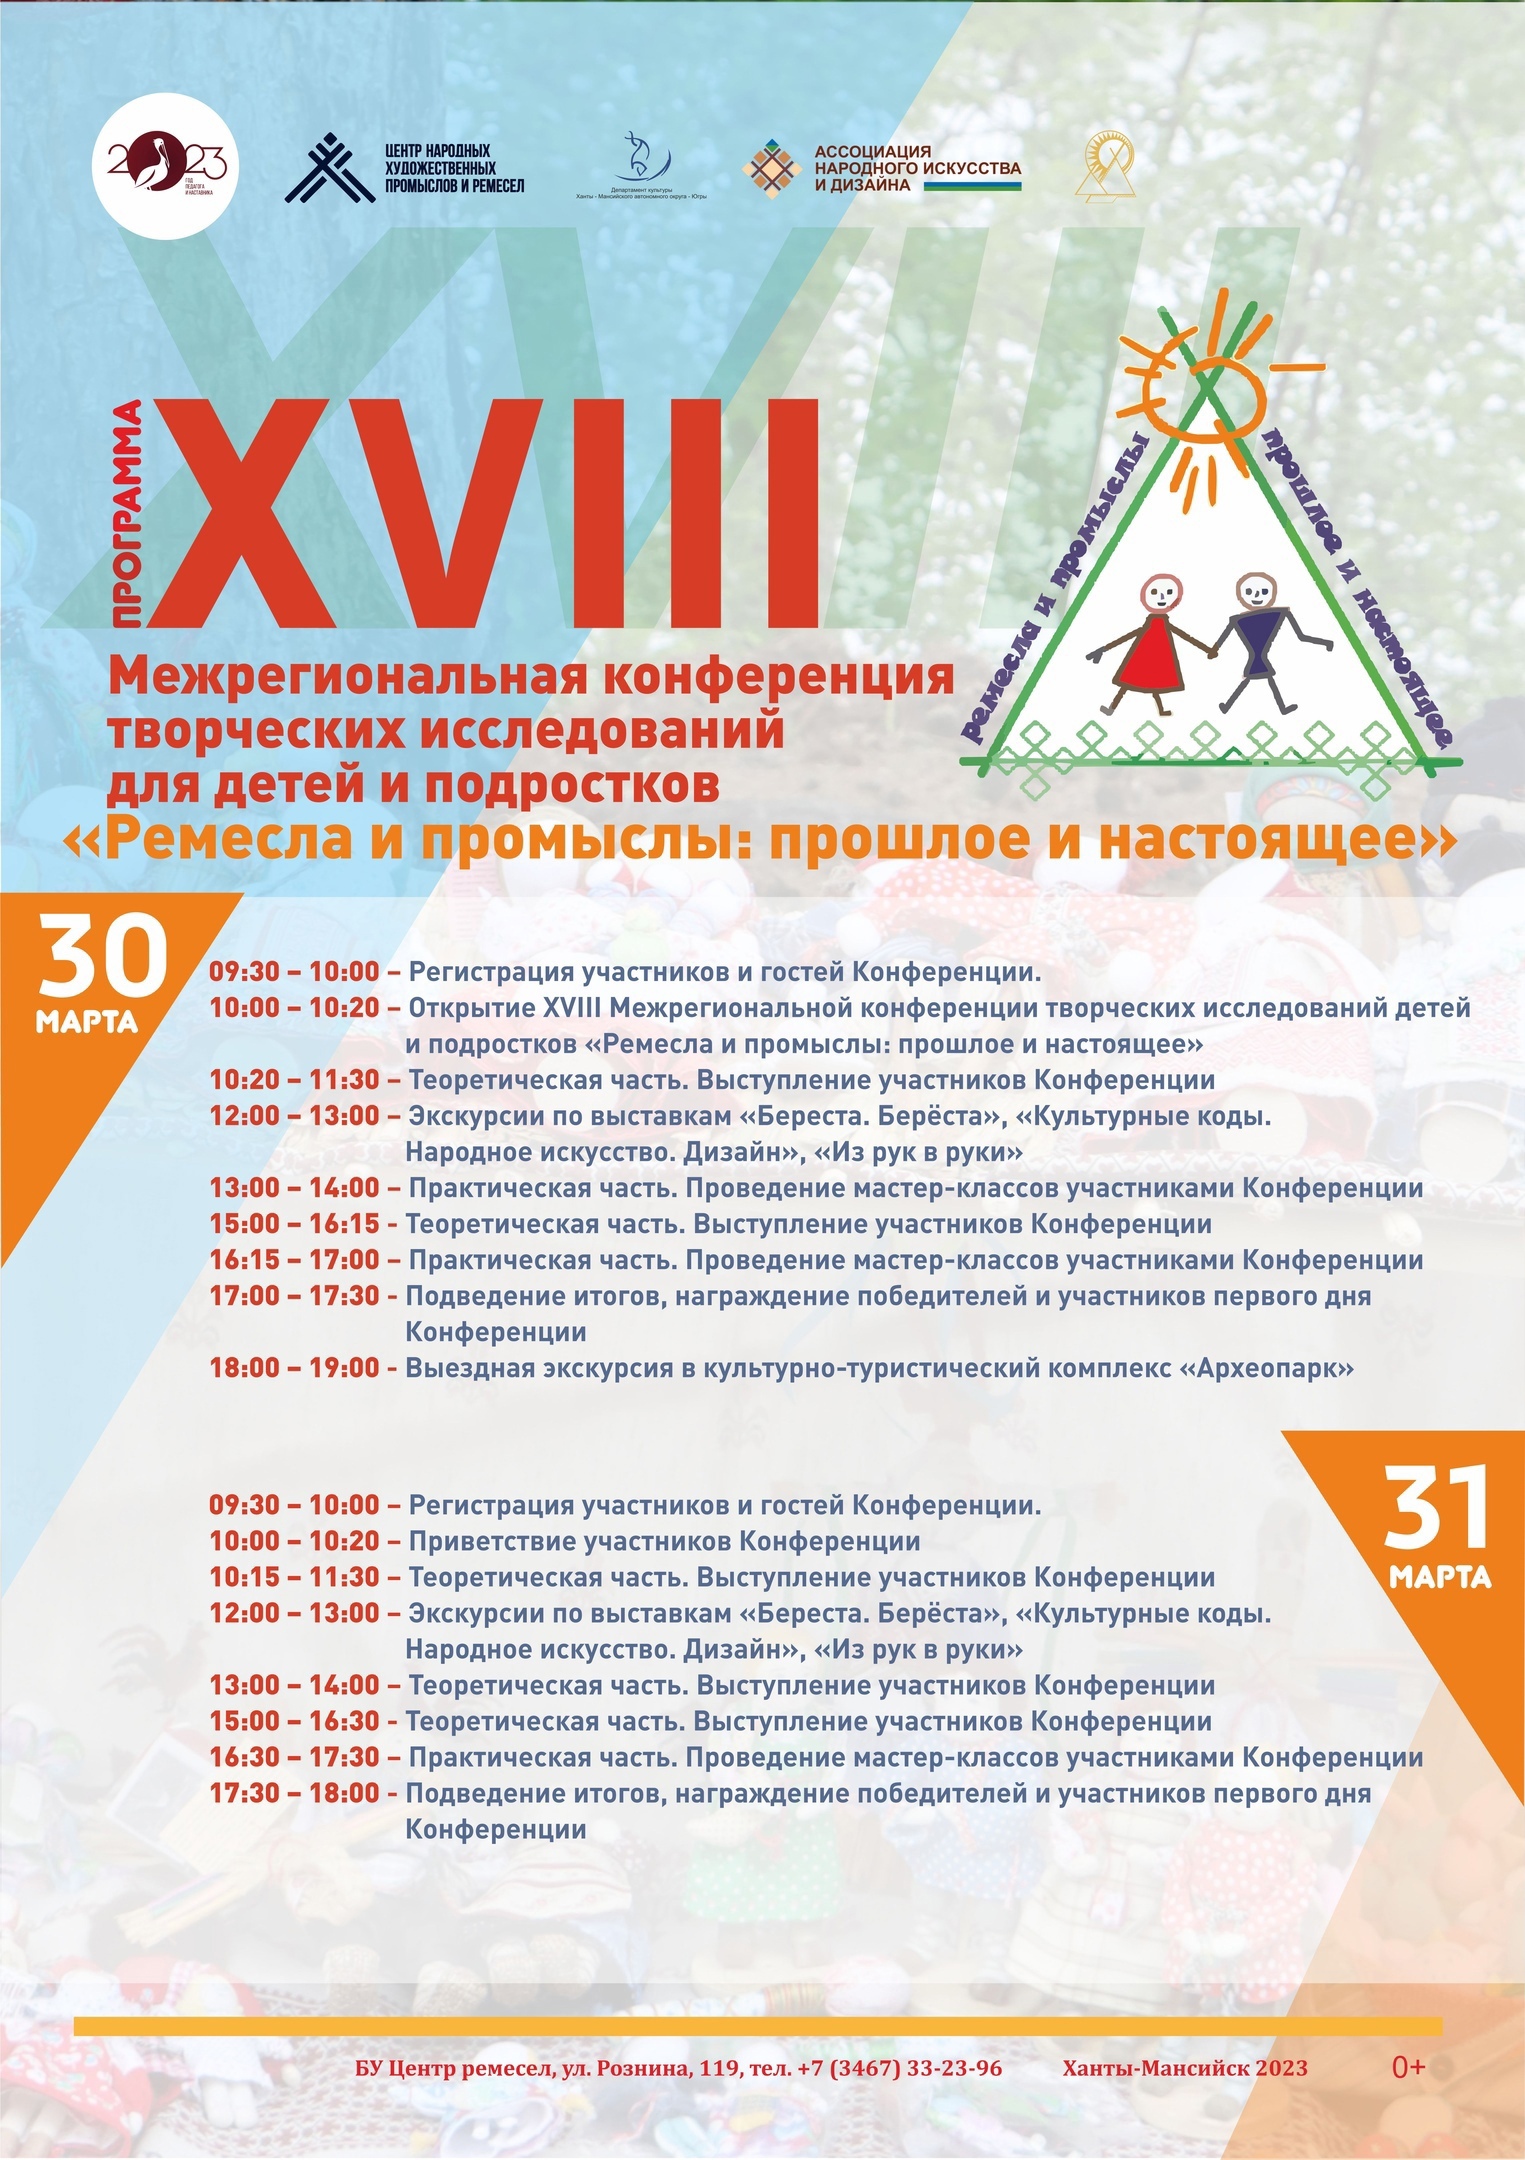 30-31 марта в Ханты-Мансийске пройдет XVIII Межрегиональная конференция творческих исследований детей и подростков «Ремёсла и промыслы: прошлое и настоящее».